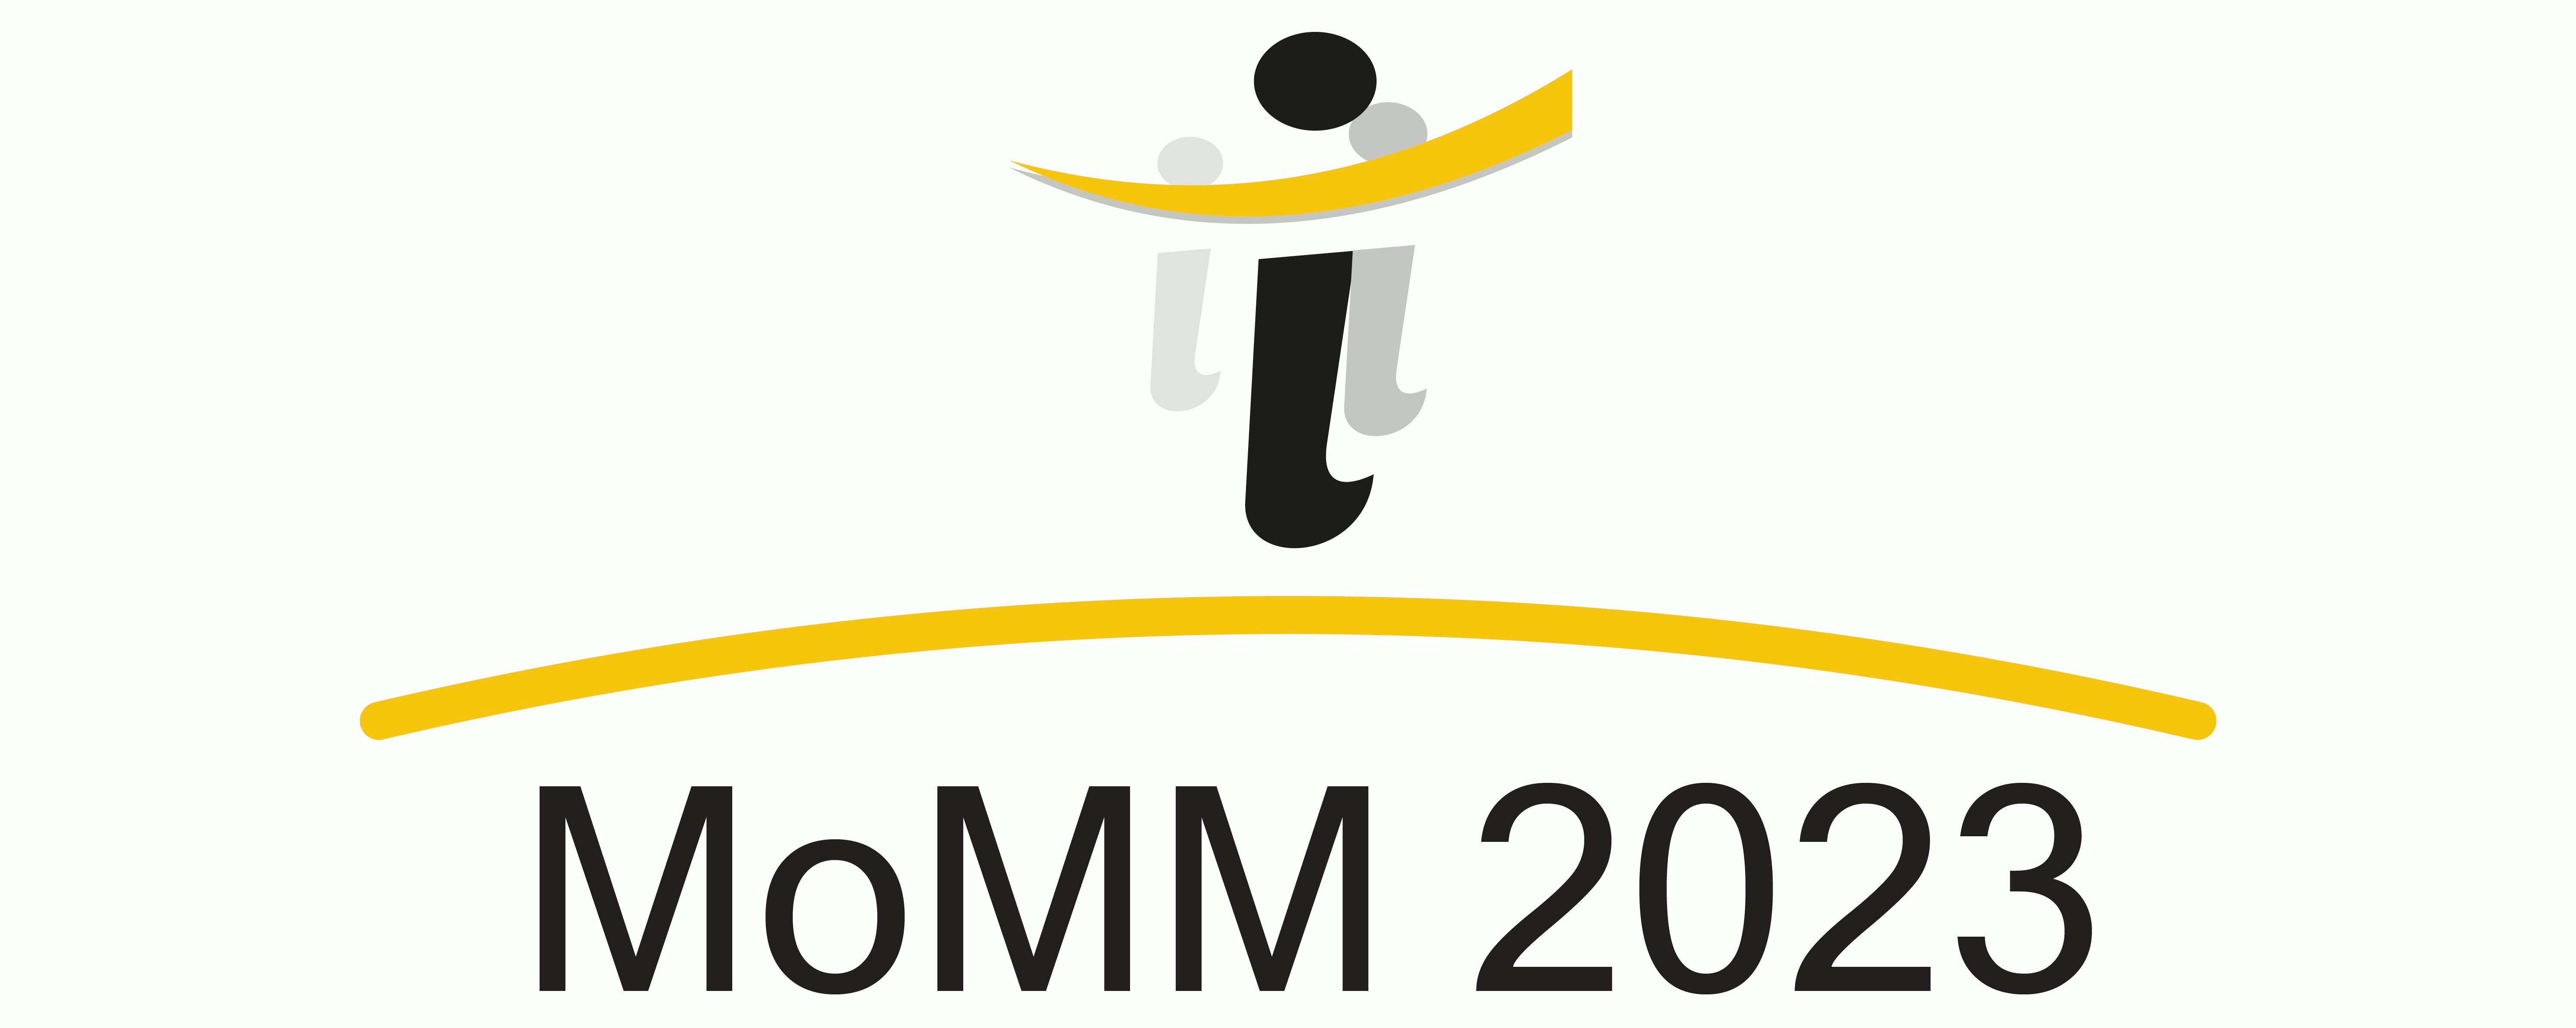 momm 2023 logo